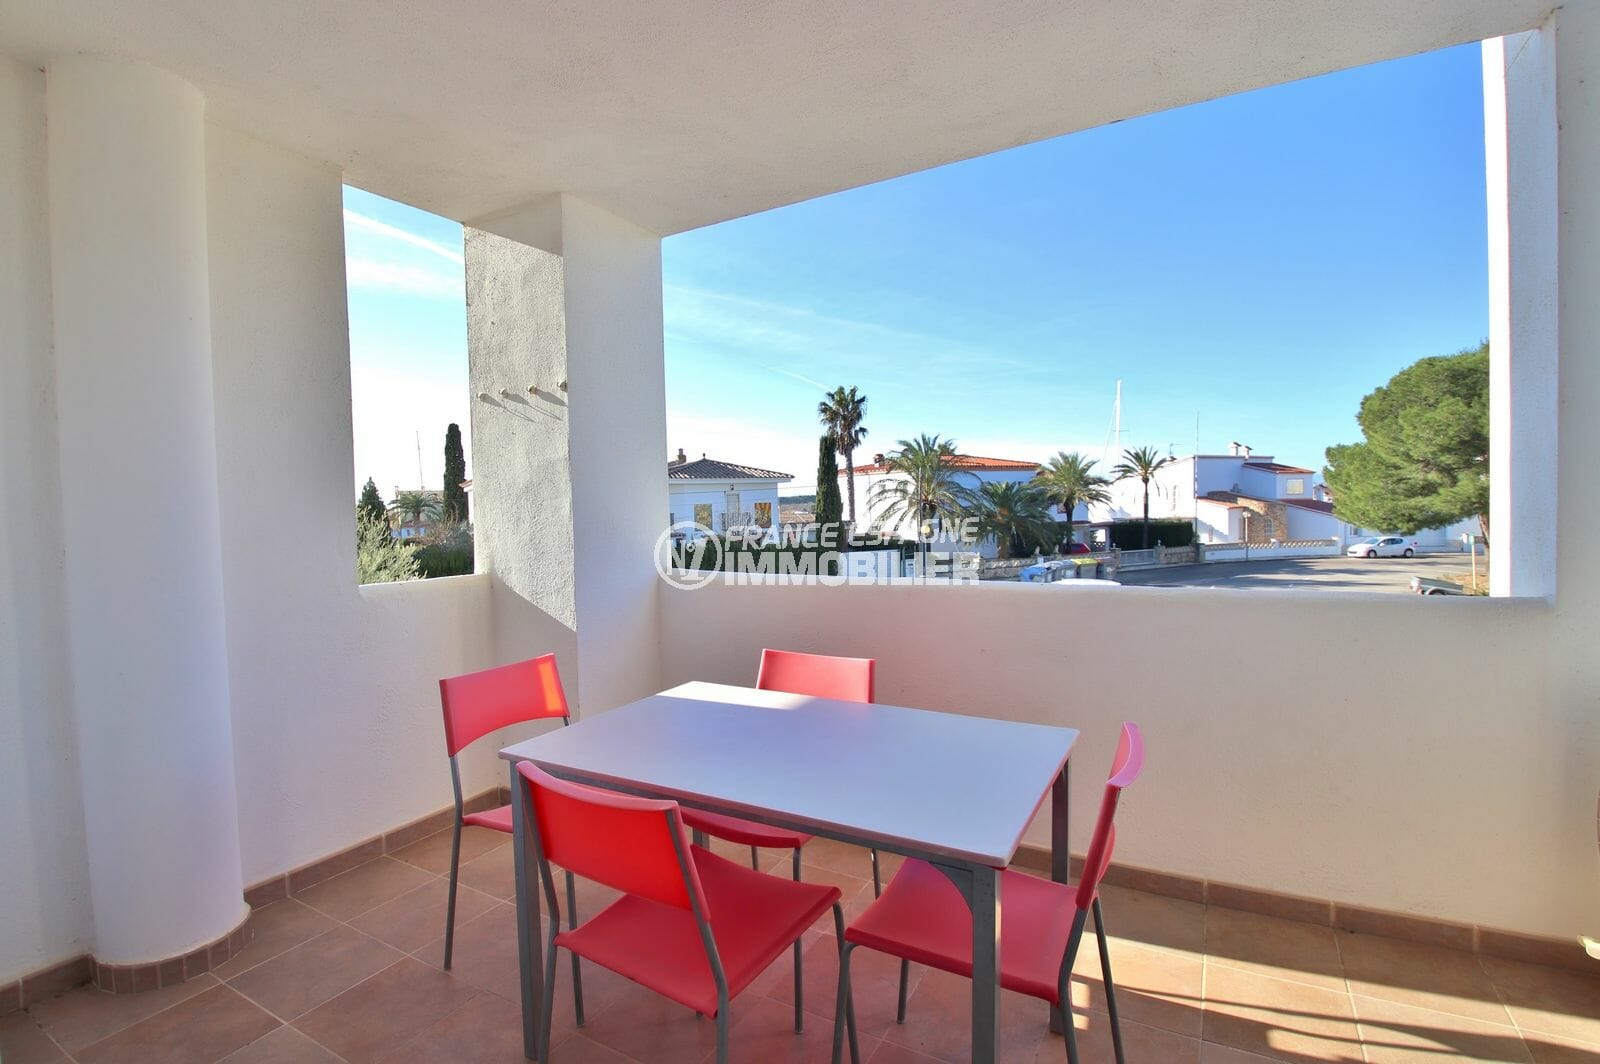 vente appartement rosas, santa margarita, 3 chambres, terrase couverte, piscine, proche plage